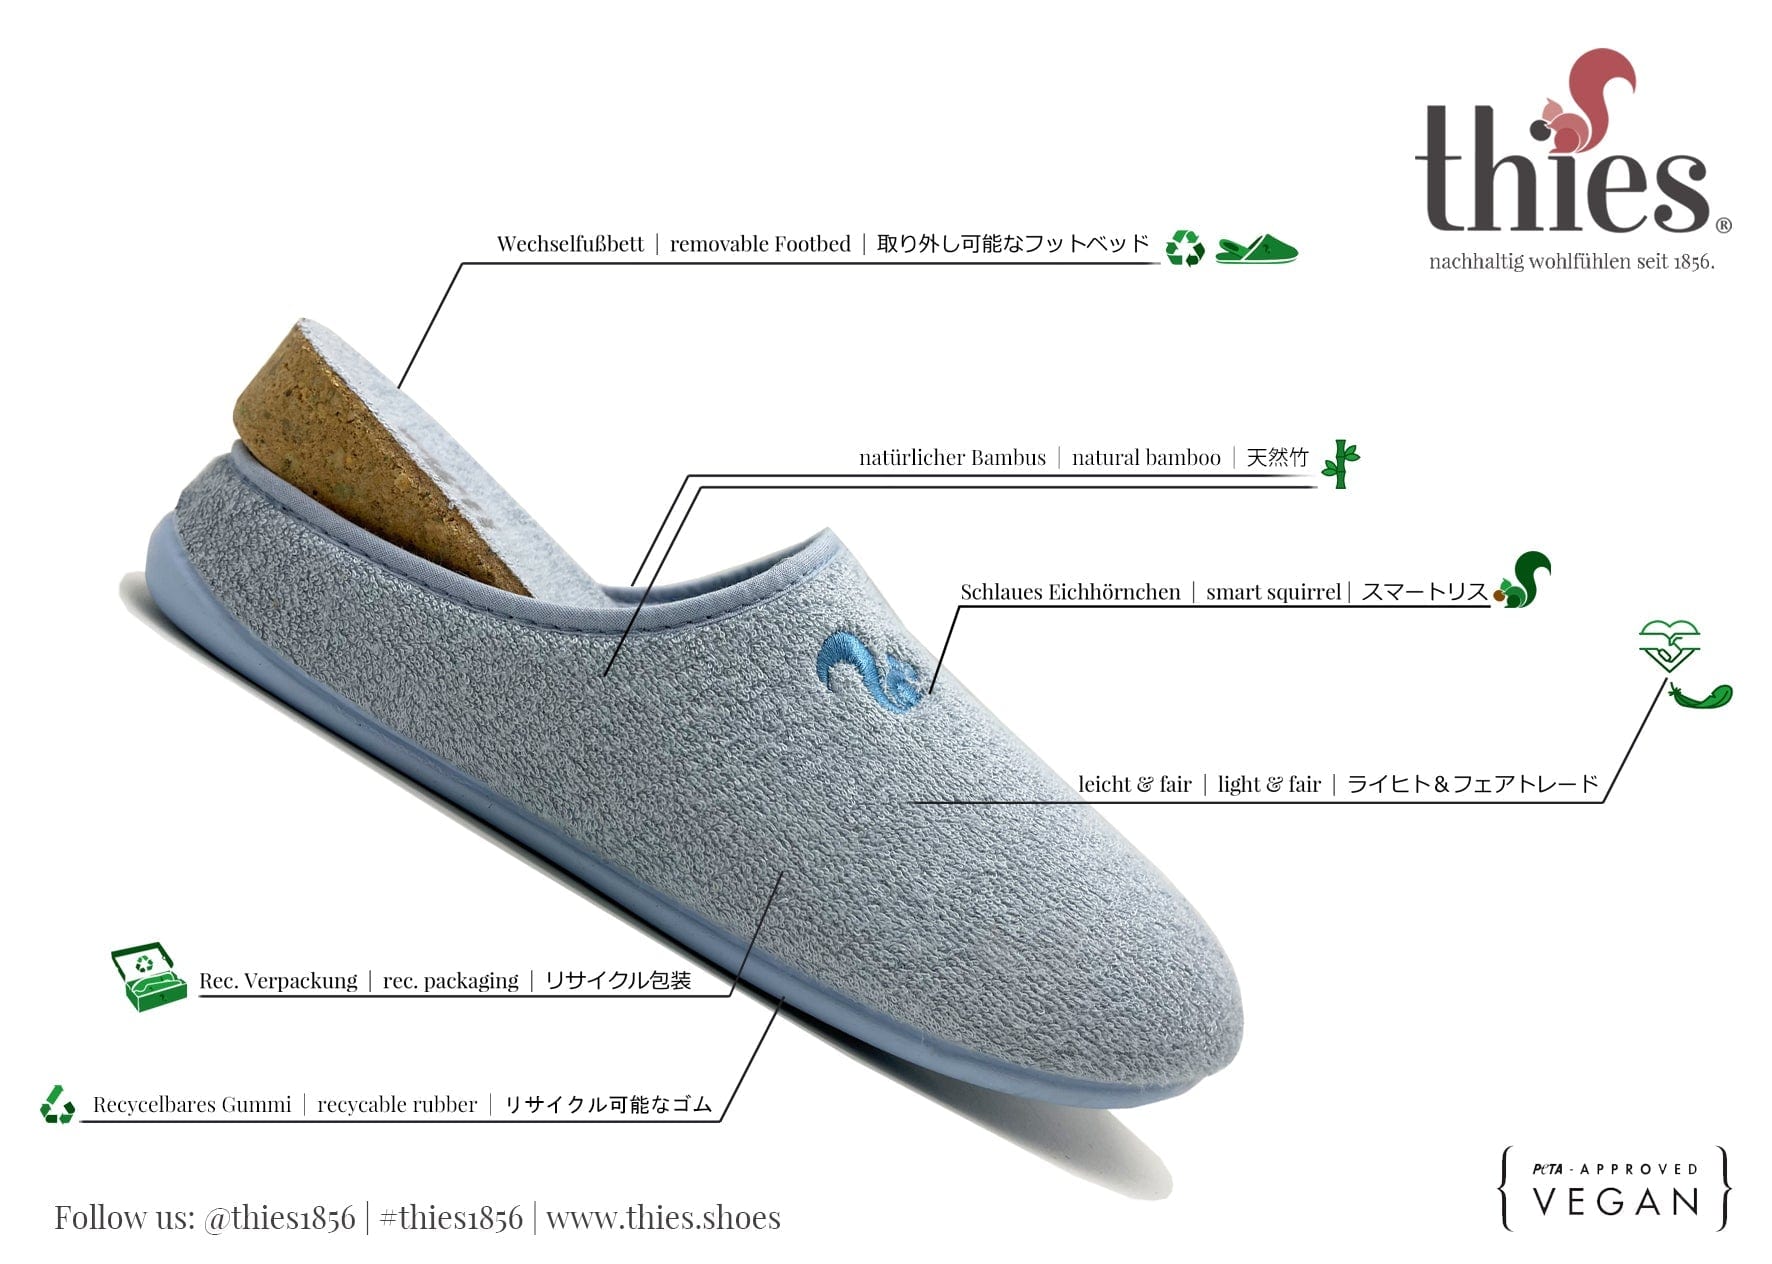 NAT 2 calzado thies 1856 ® Bamboo Slipper vegan indigo azul claro (W/M) moda sostenible moda ética